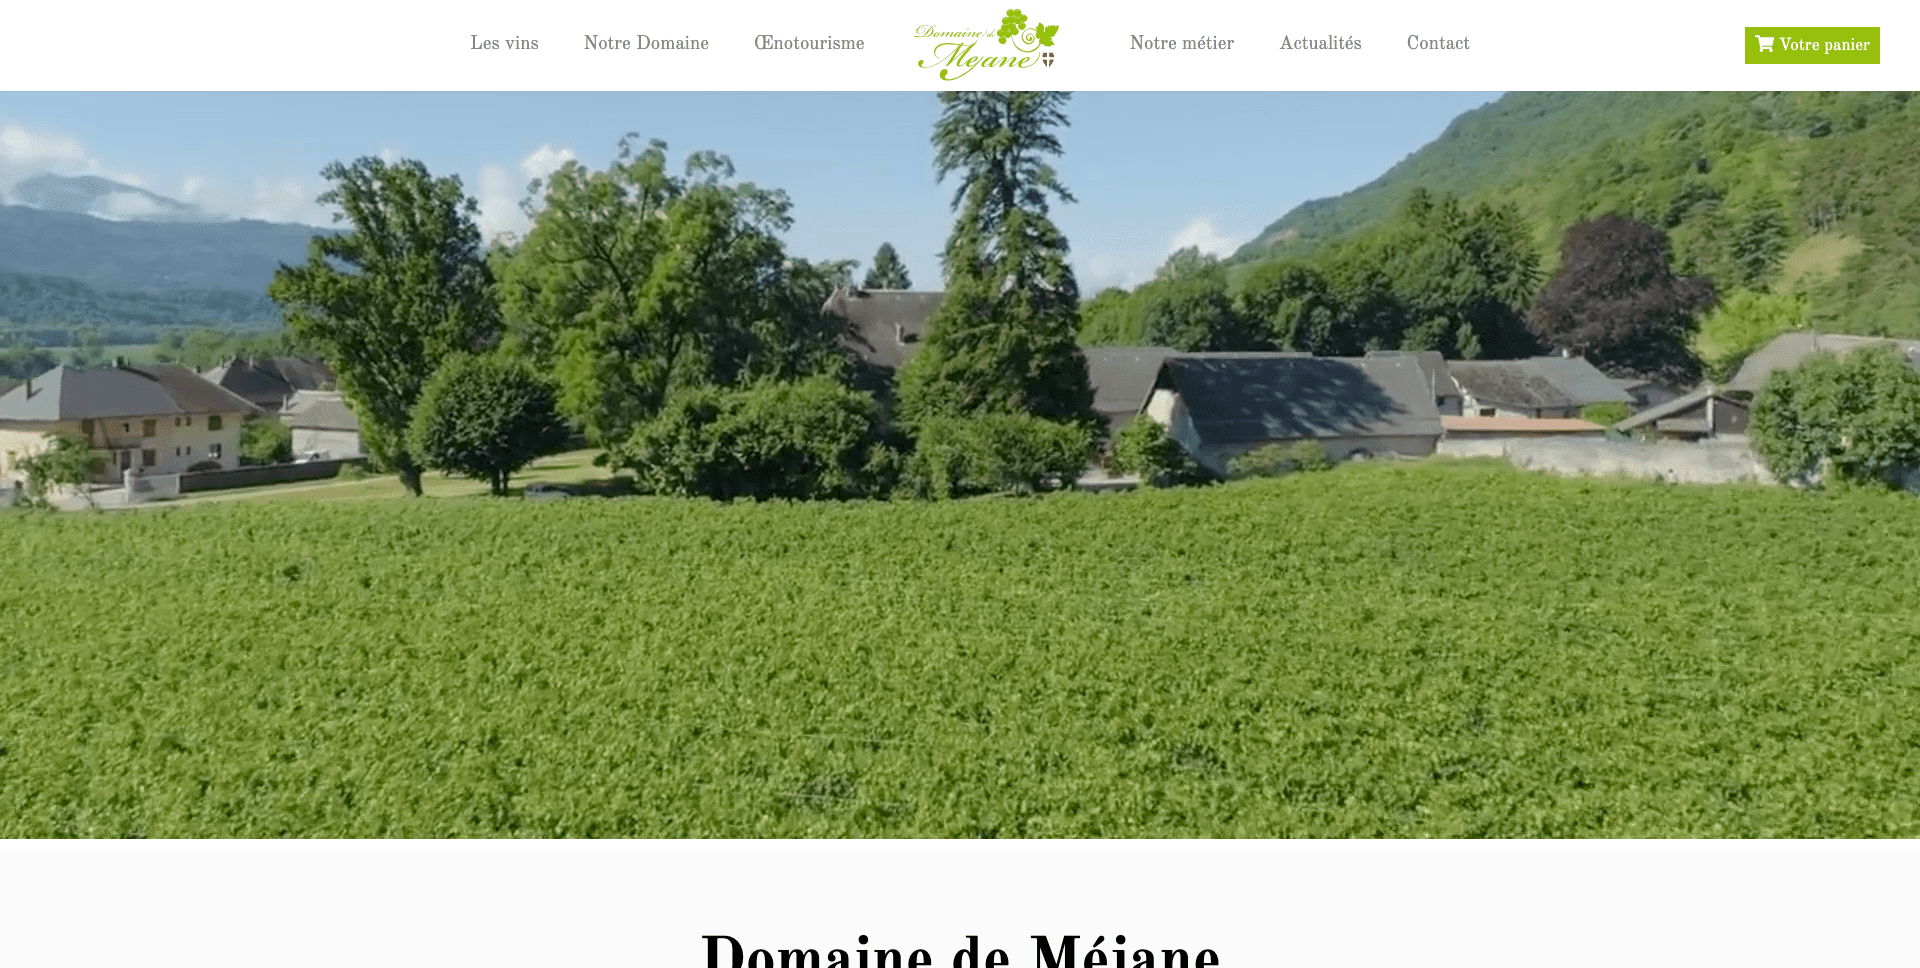 Création site interne d'un vigneron en savoie